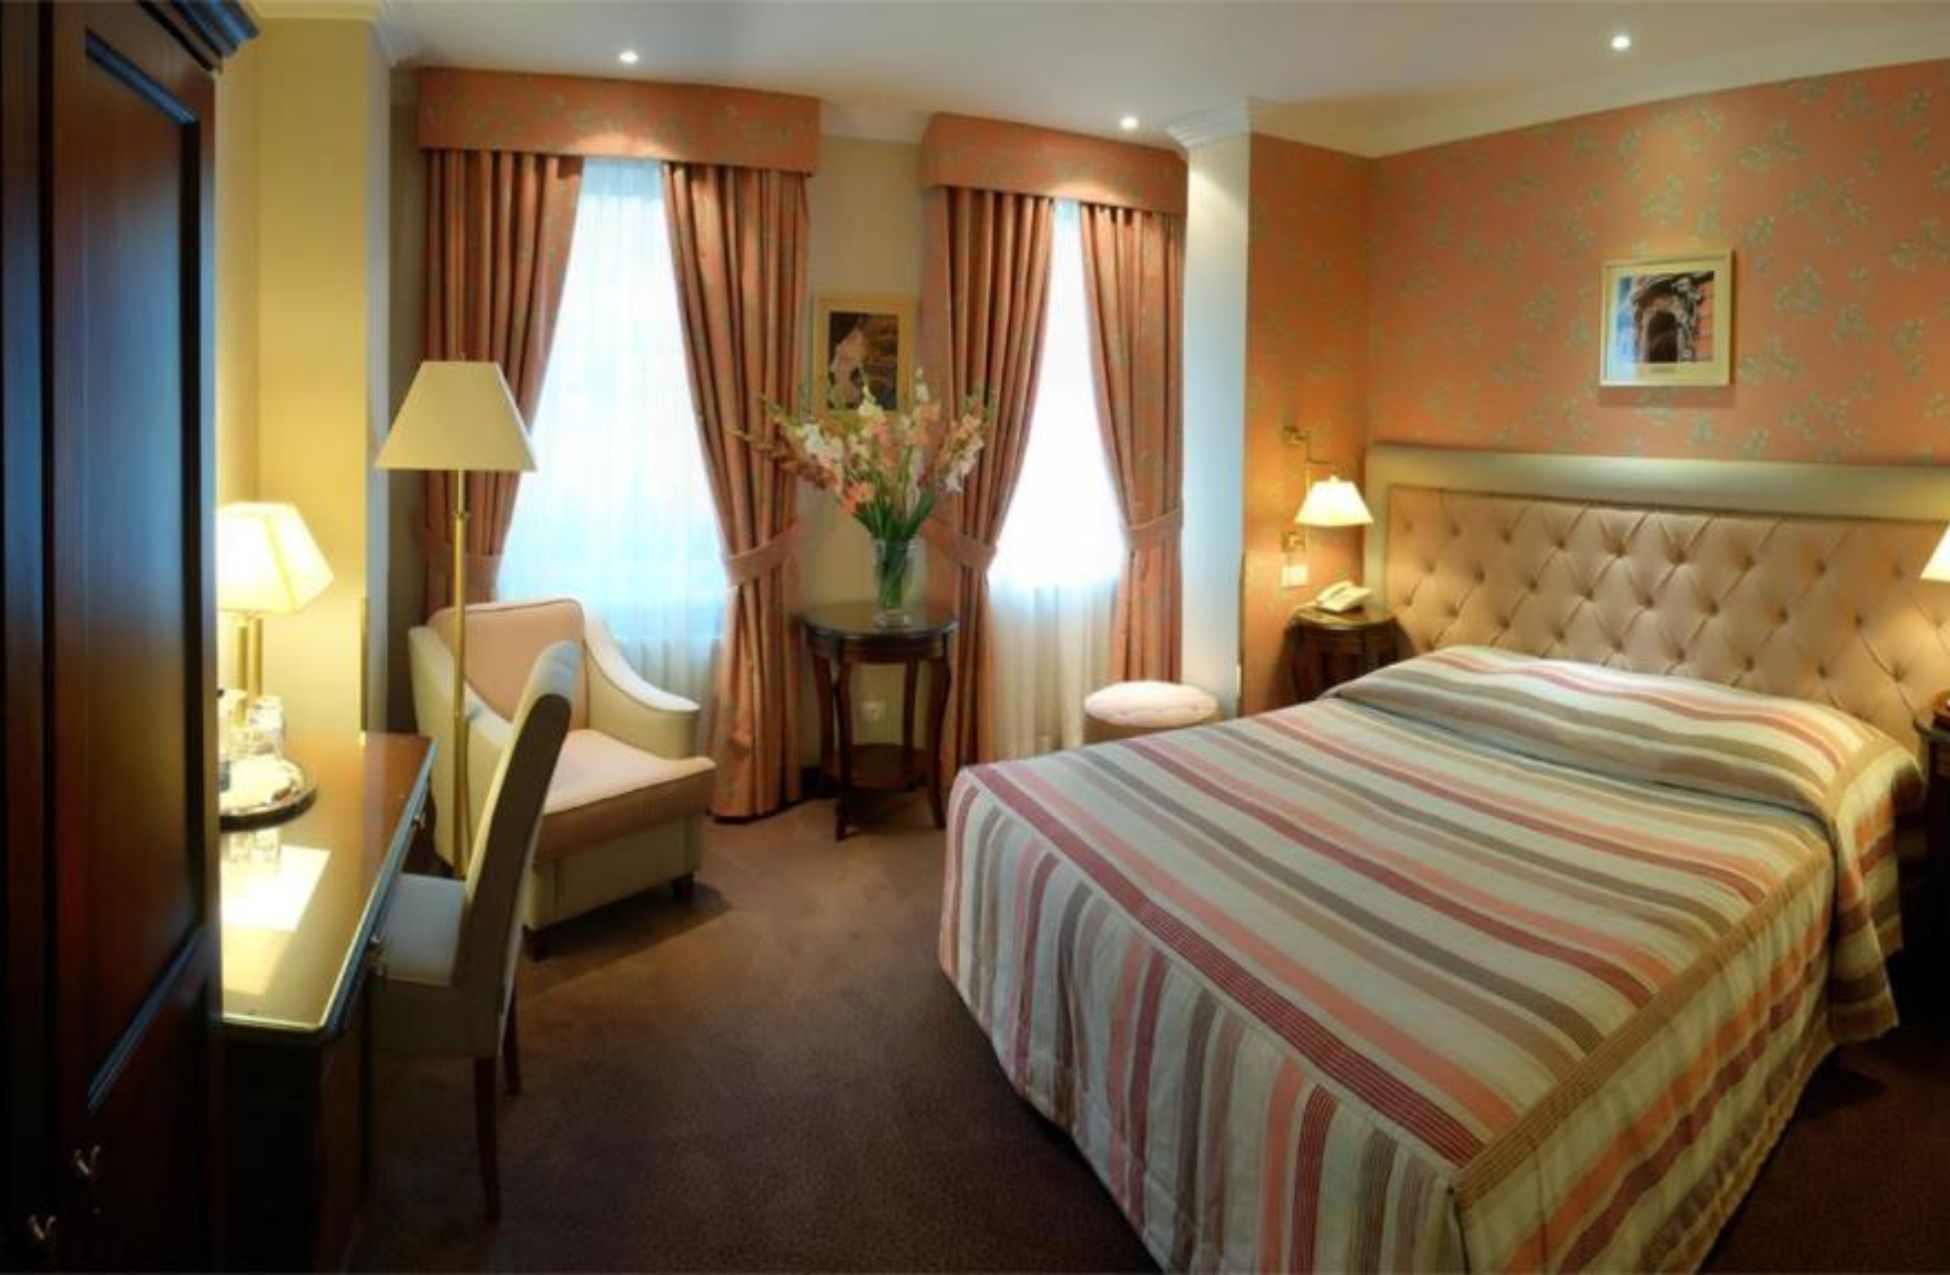 Swiss Hotel - Best Hotels In Lviv